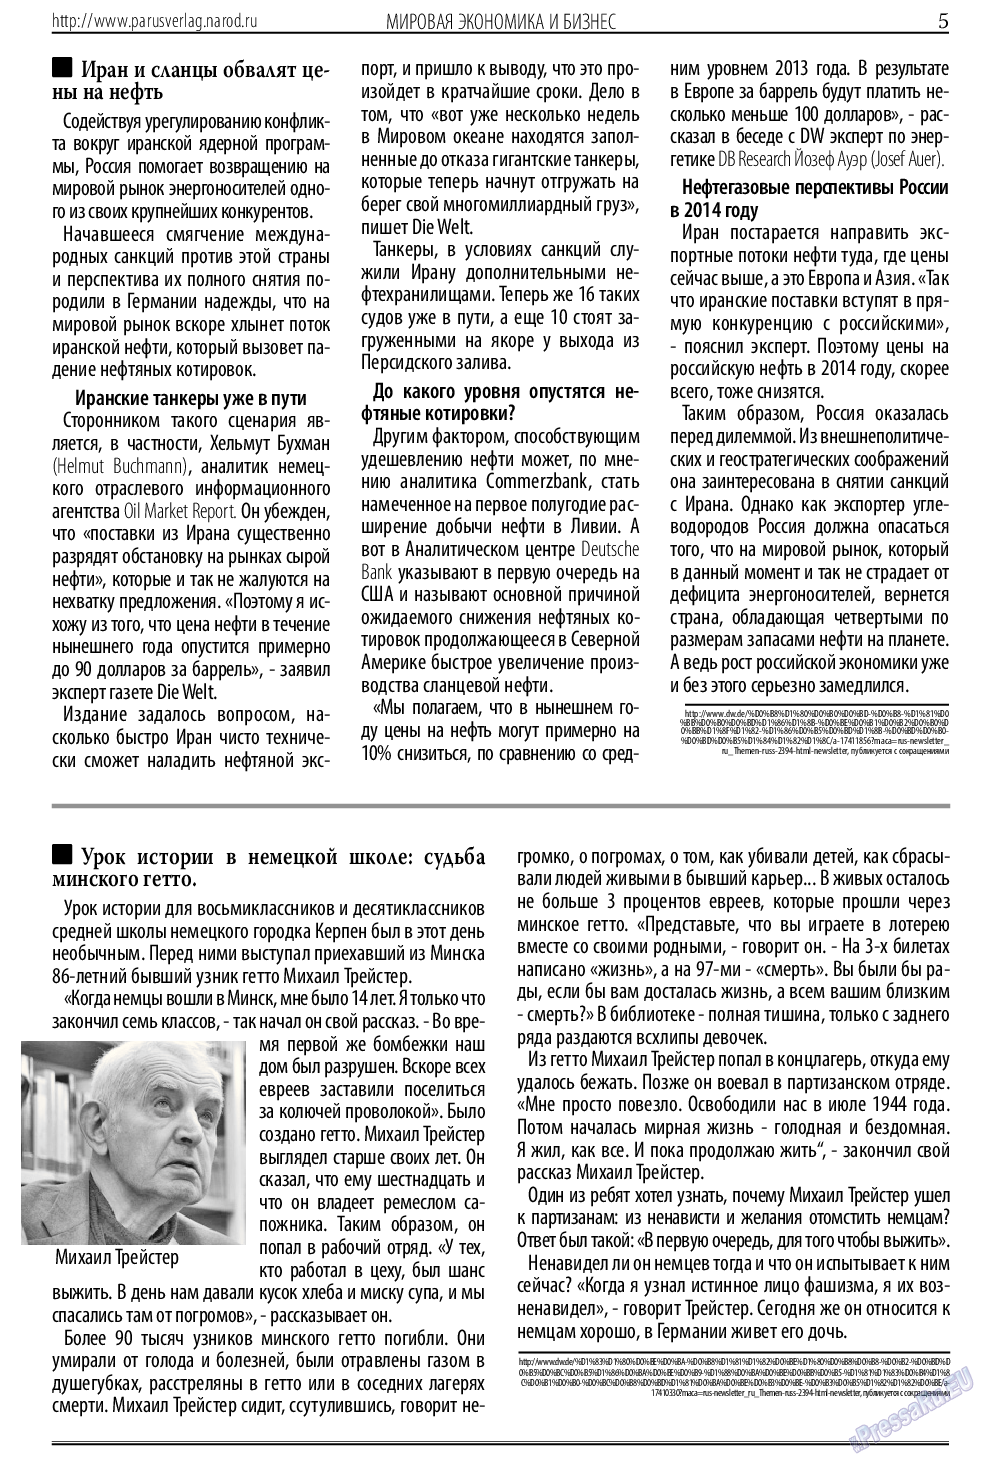 Парус (газета). 2014 год, номер 4, стр. 5